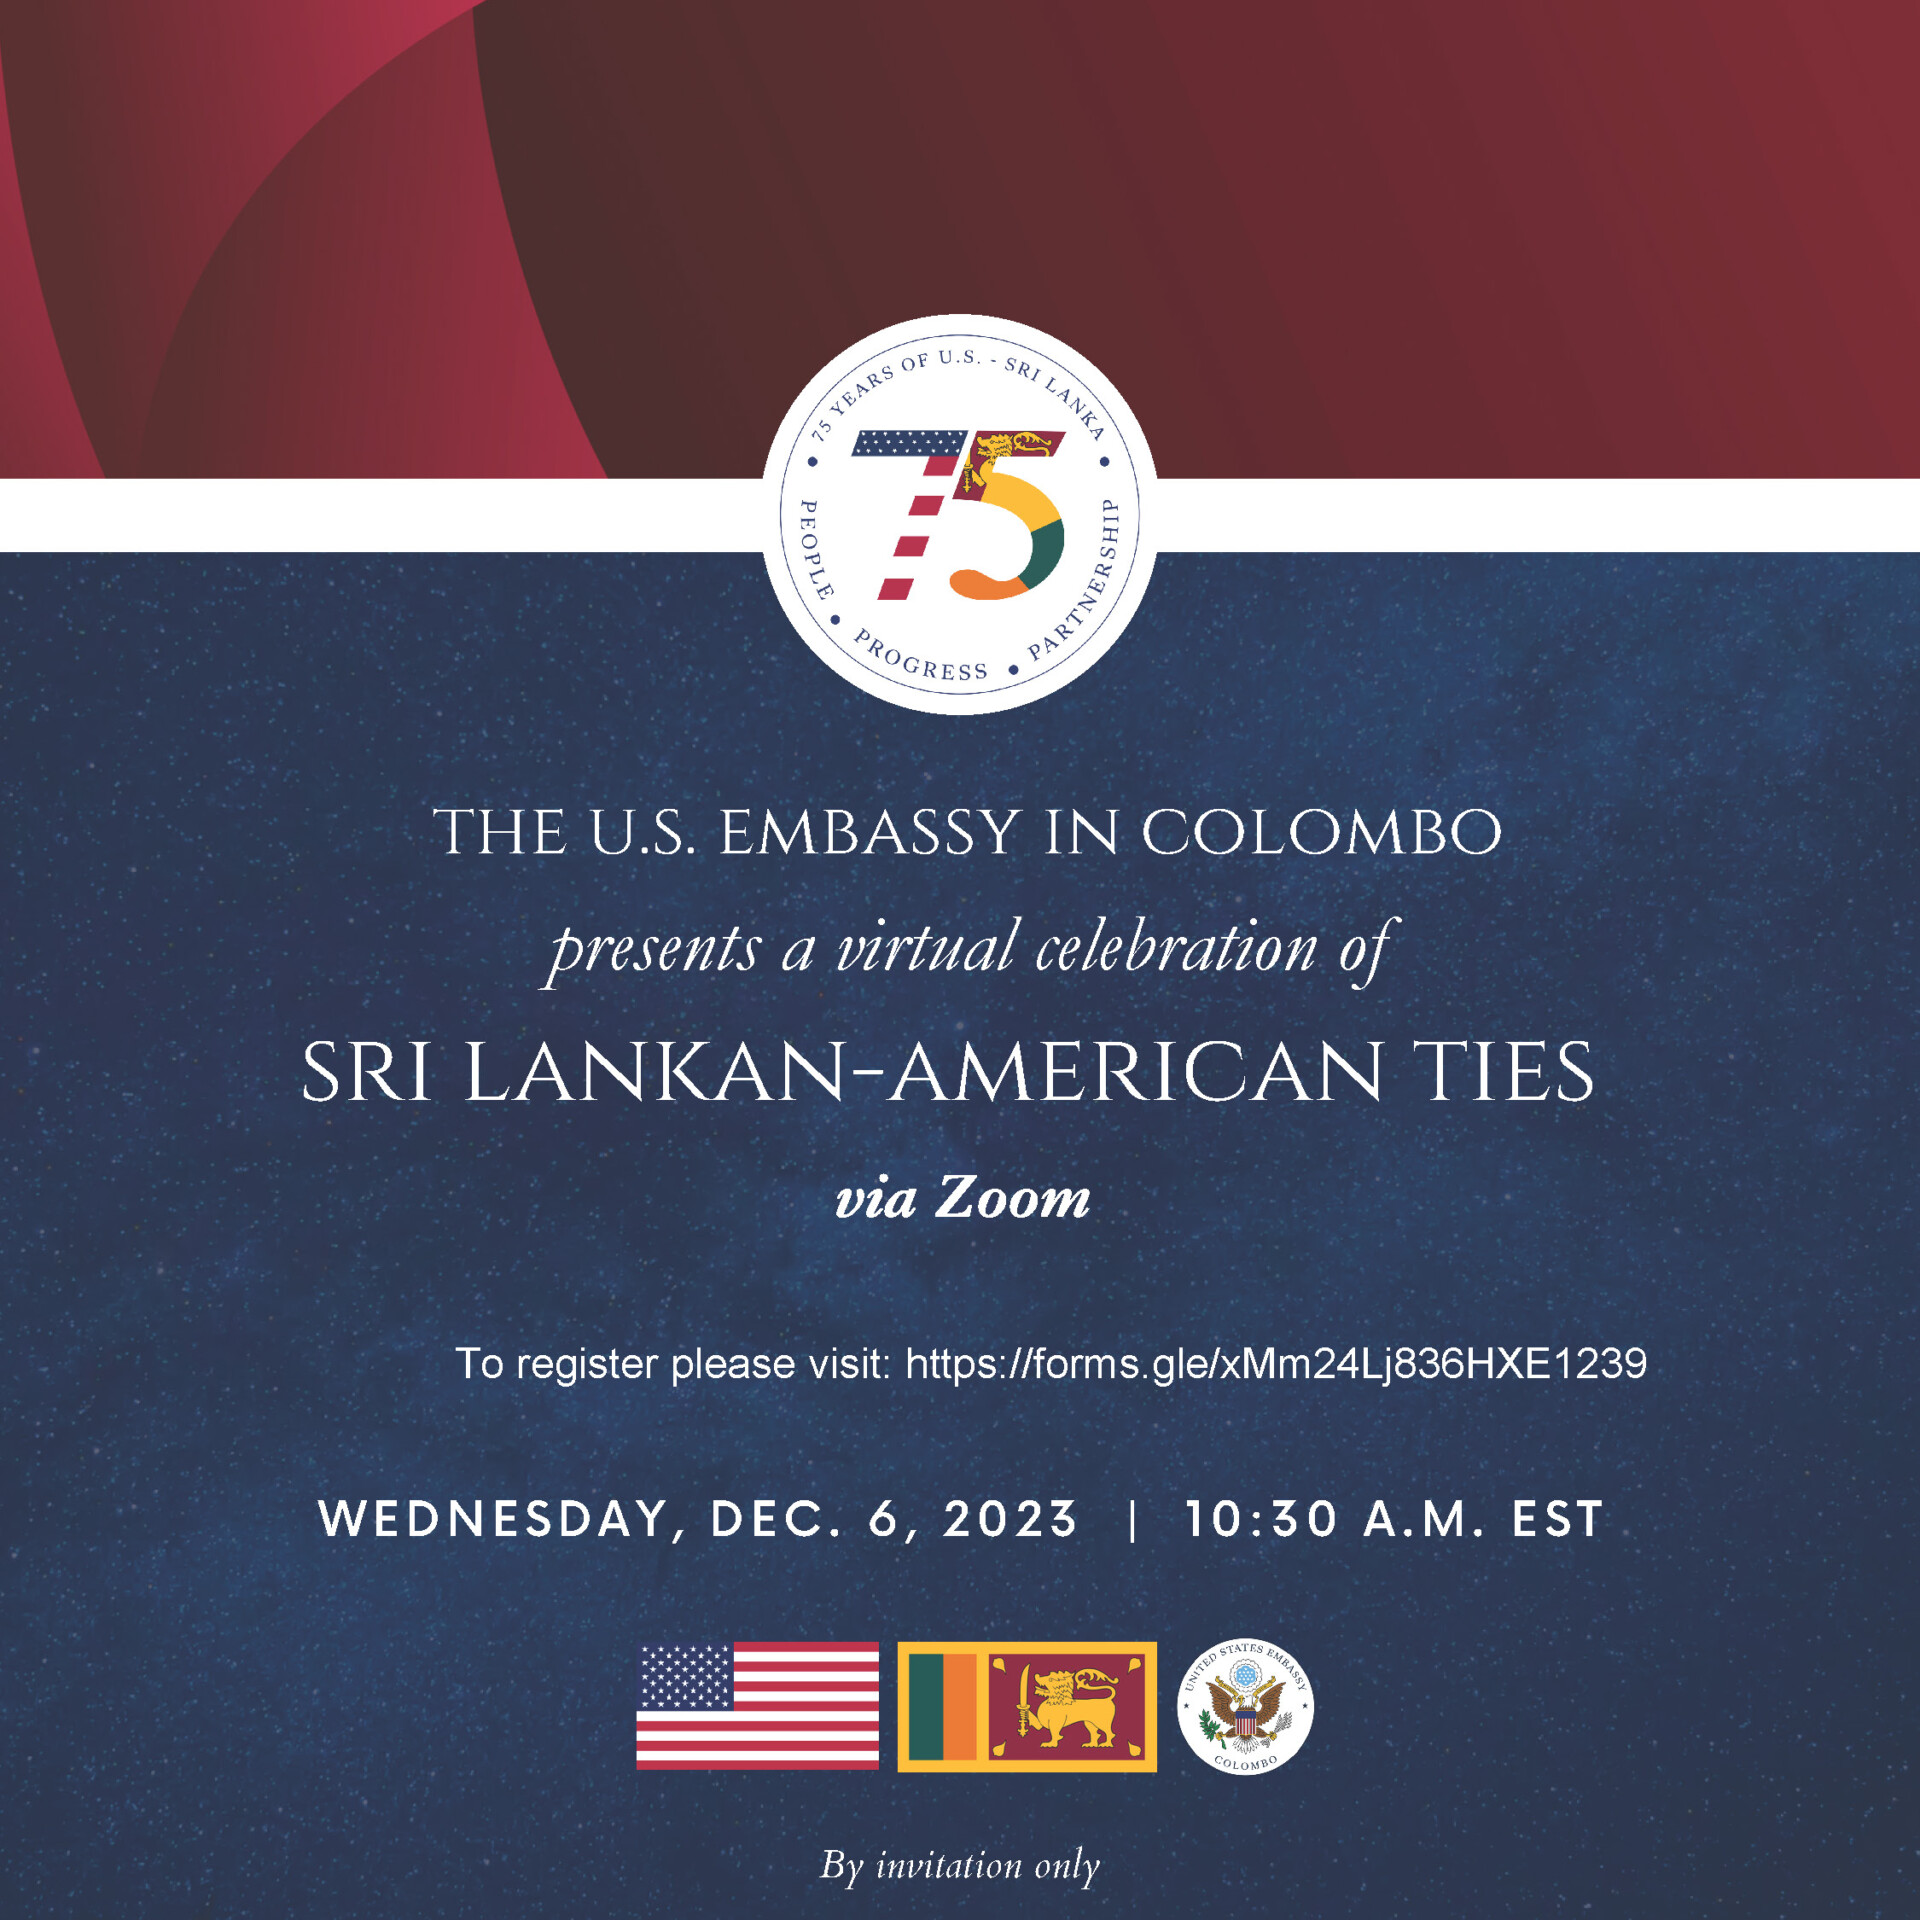 Sri Lankan-American Ties